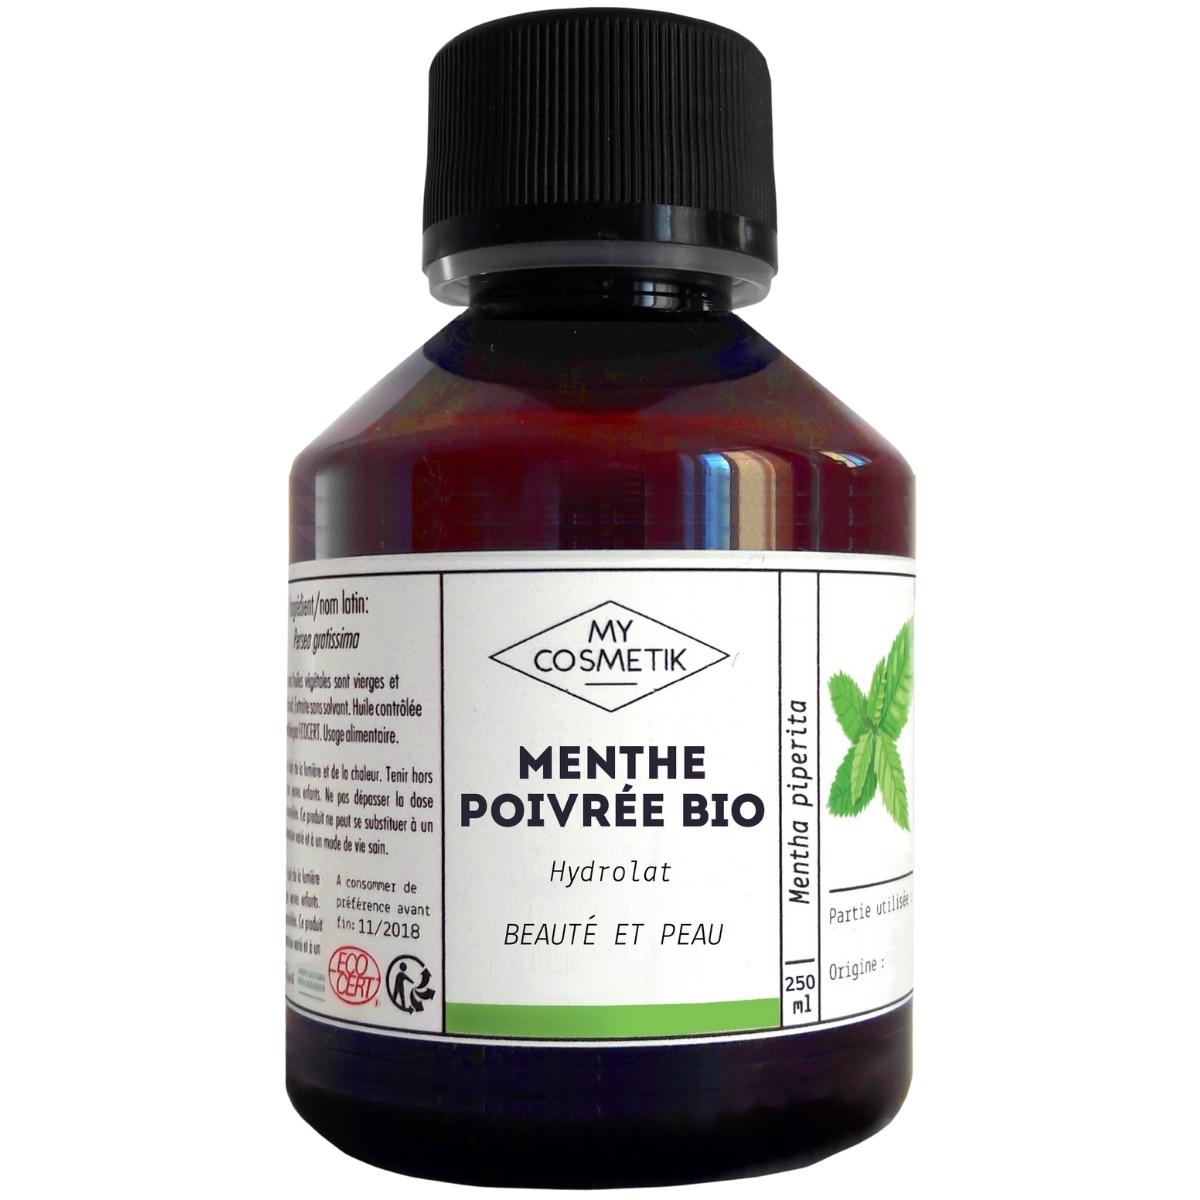 Hydrolat de menthe poivrée - 250 ml